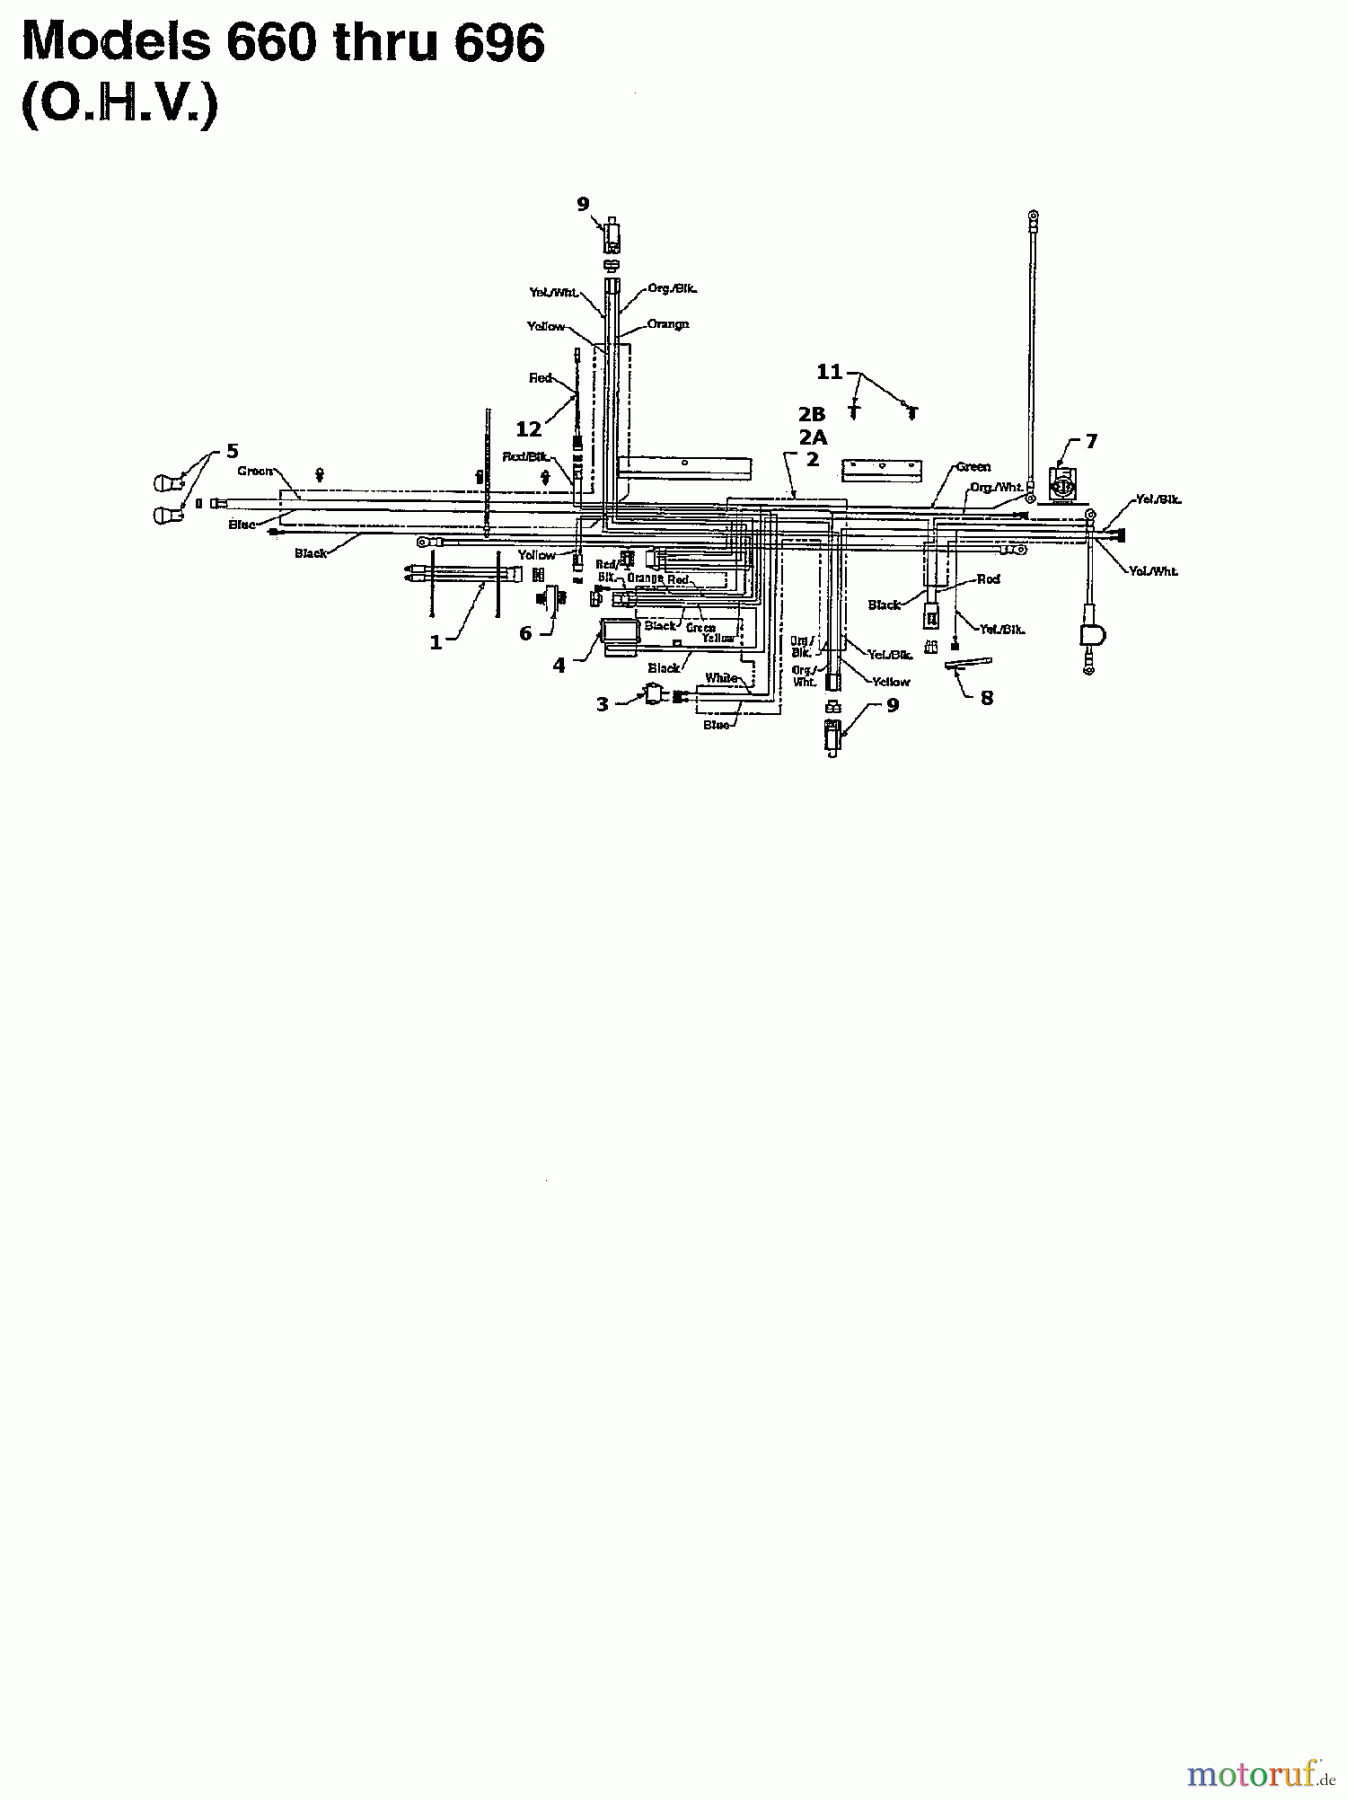  White Rasentraktoren LT 135 136N696F679  (1996) Schaltplan für O.H.V.